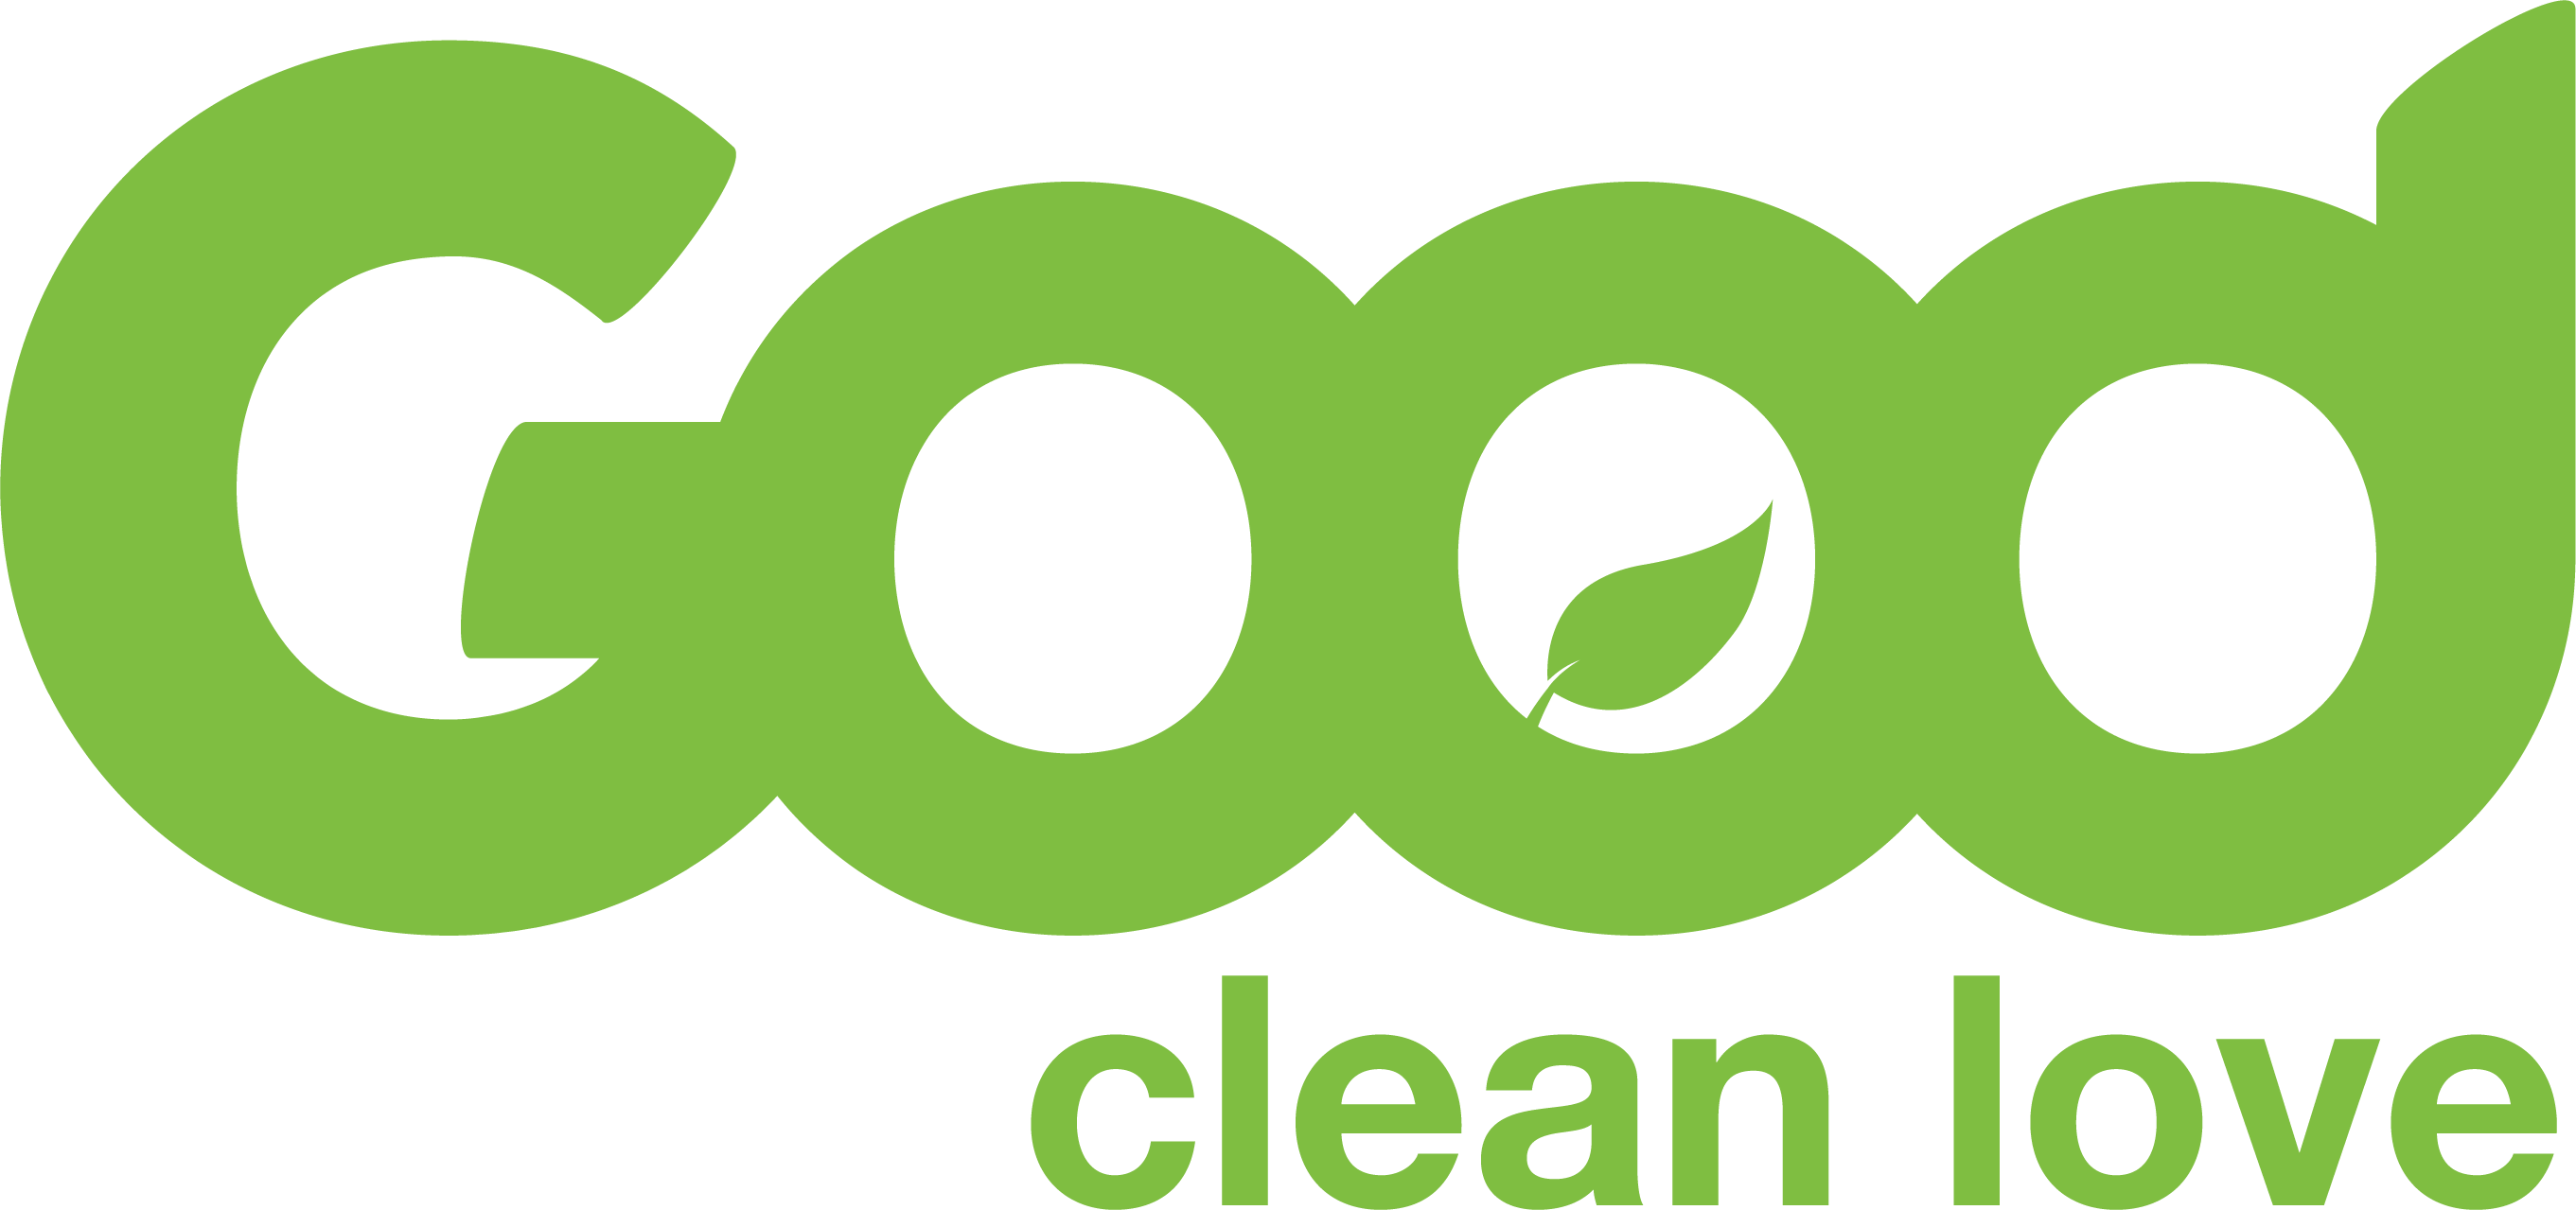 good clean love logo